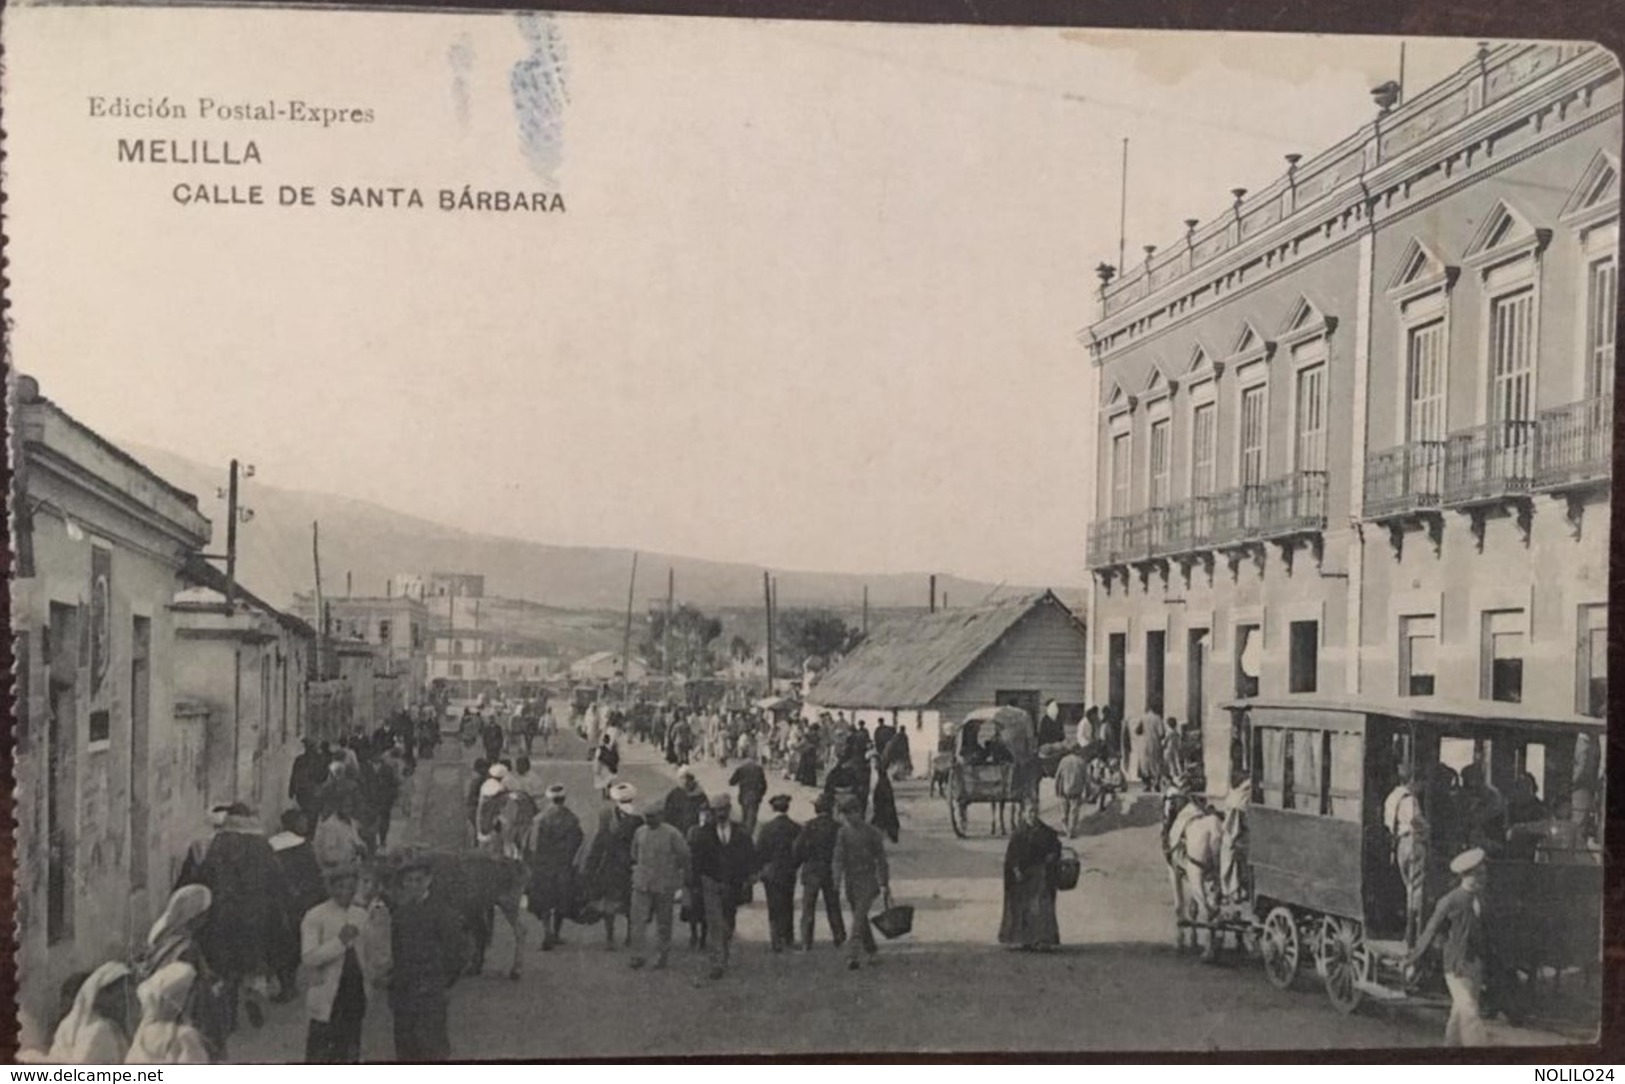 CPA, MELILLA - Calle De Santa Barbara, Postal Con Animación, Equipos, Caballos, Personajes,animée,1915, éd Postal Expres - Melilla